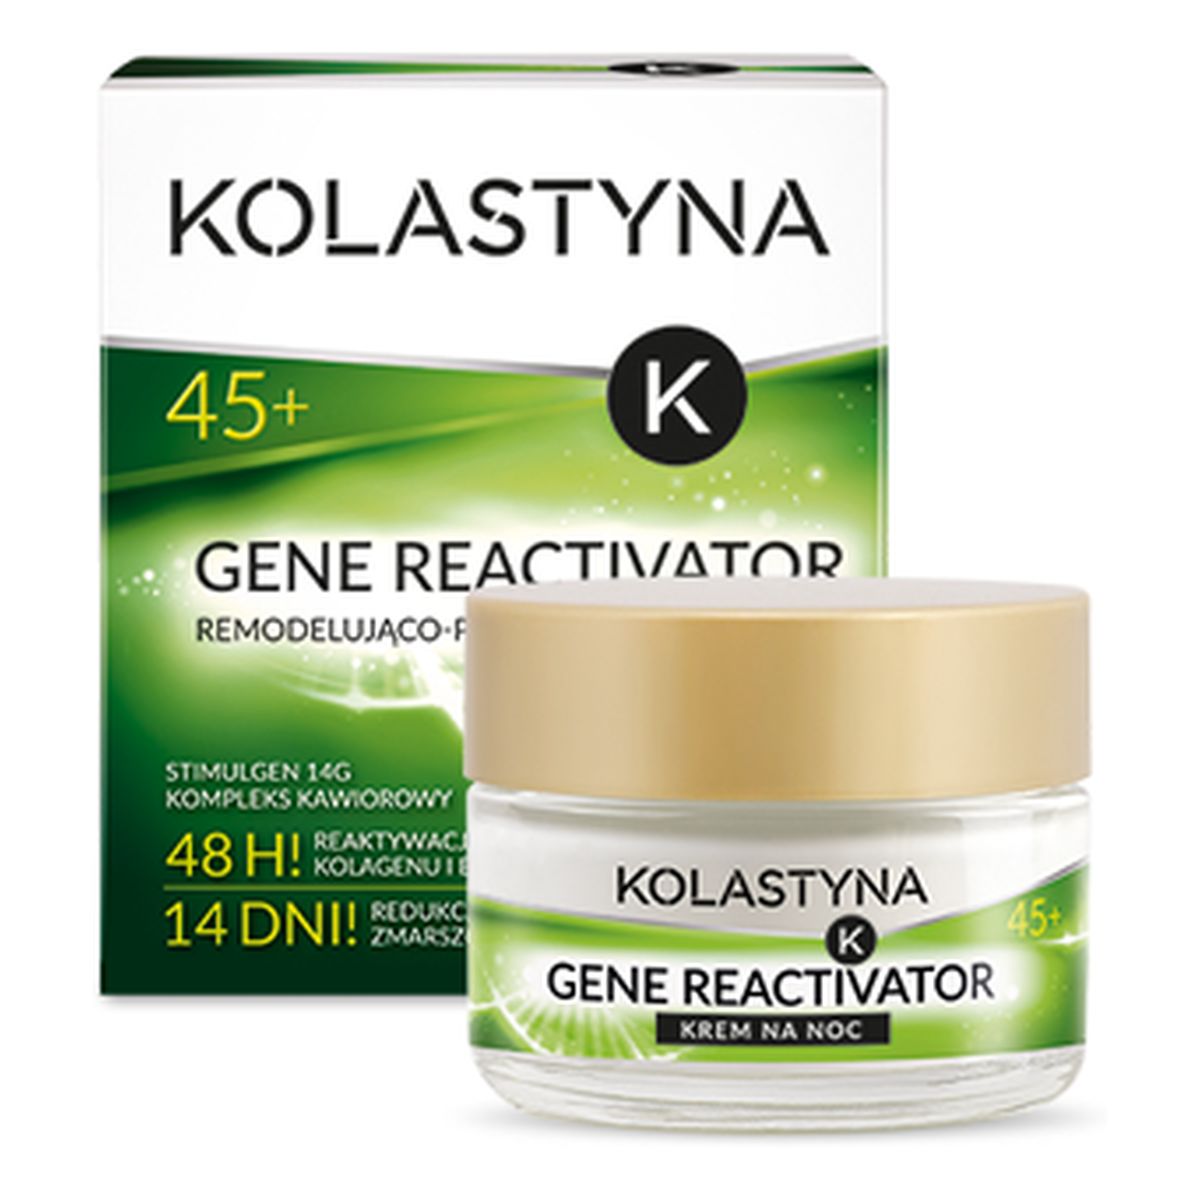 Kolastyna Gene Reactivator 45+ Remodelująco - Przeciwzmarszczkowy Krem Do Twarzy Na Noc 50ml